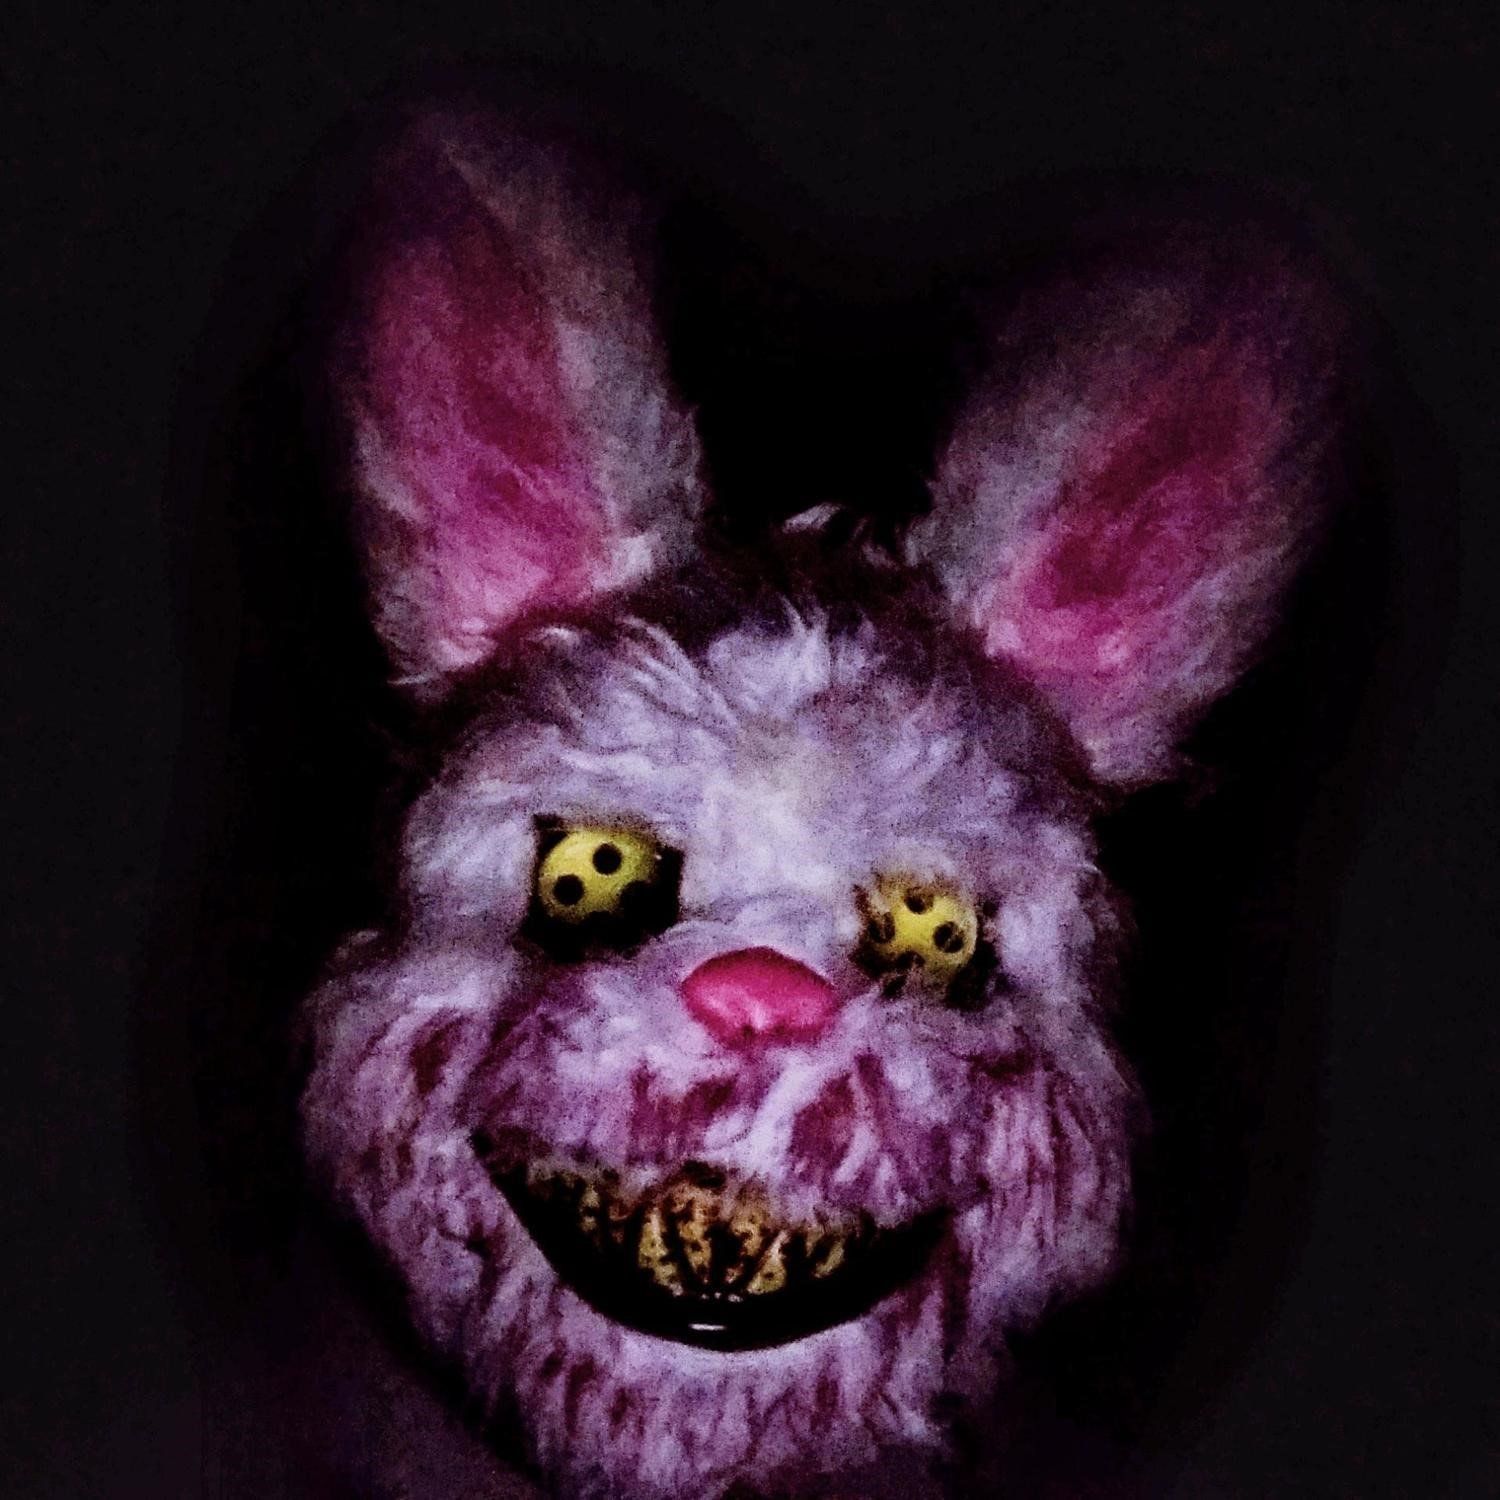 血腥兔面具头套jk恶魔兔k子恐怖吓人万圣节鬼脸网红学生杀手兔拍.